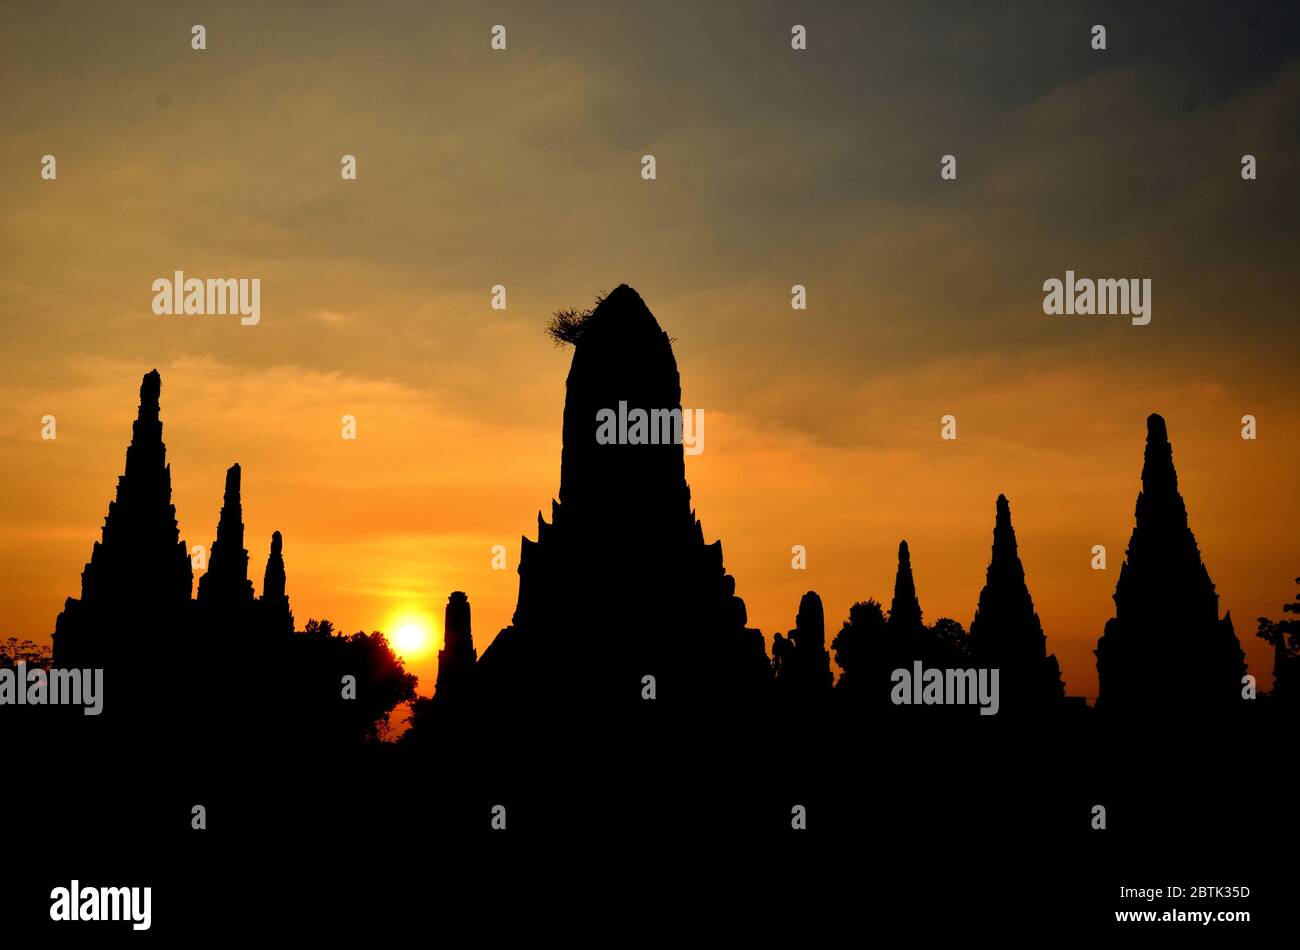 Romantic sunset at Wat Chaiwatthanaram in Ayutthaya Stock Photo